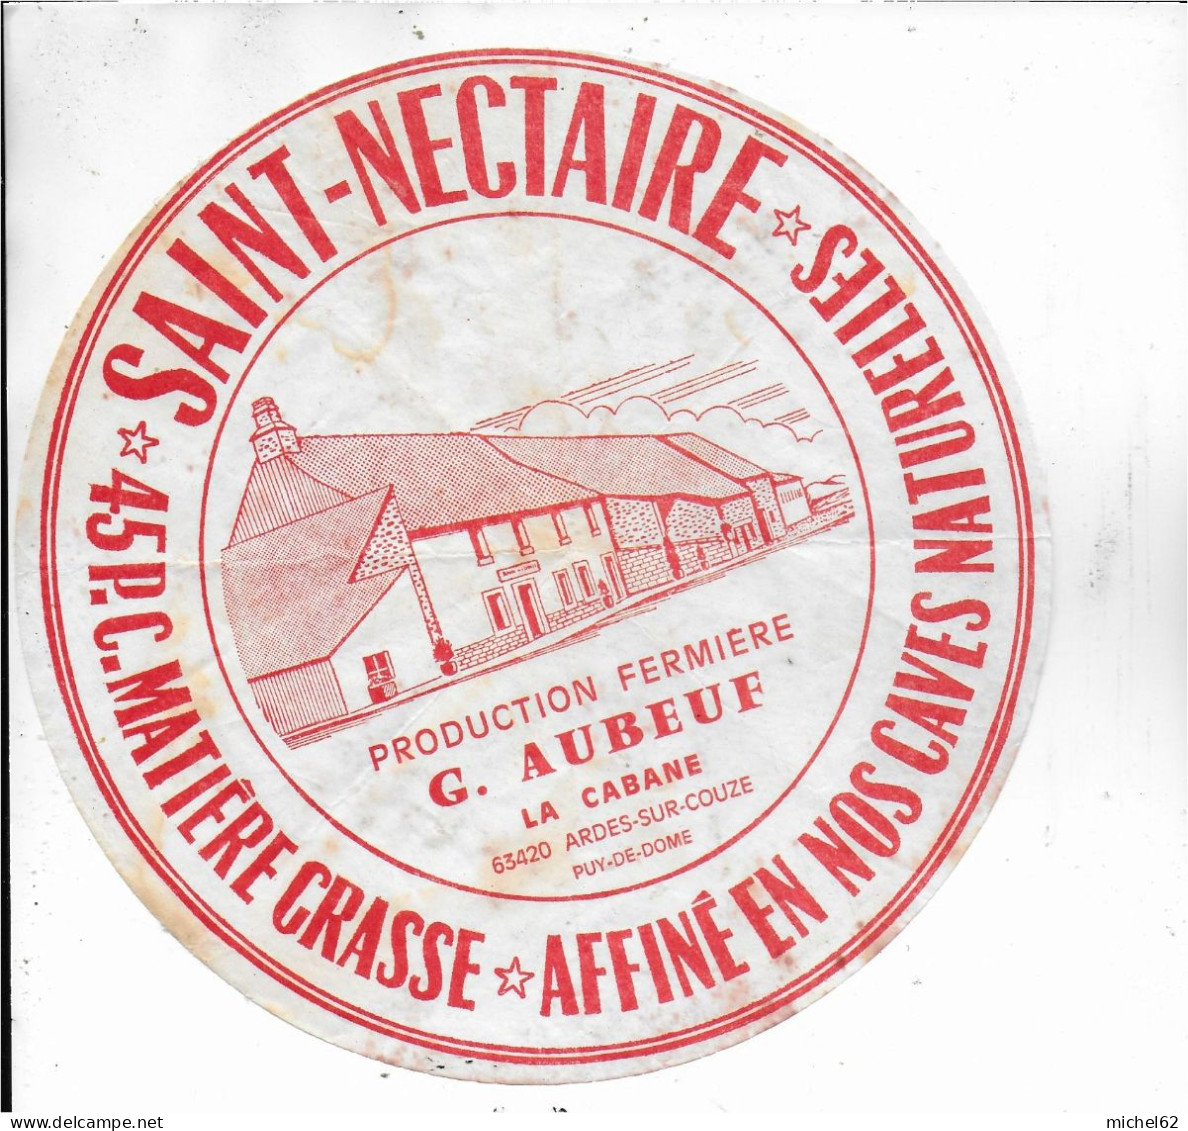 ETIQUETTE  DE  FROMAGE  SAINT NECTAIRE G. AUBEUF LA CABANE ARDES SUR COUZE PUY DE DOME  B106 - Cheese